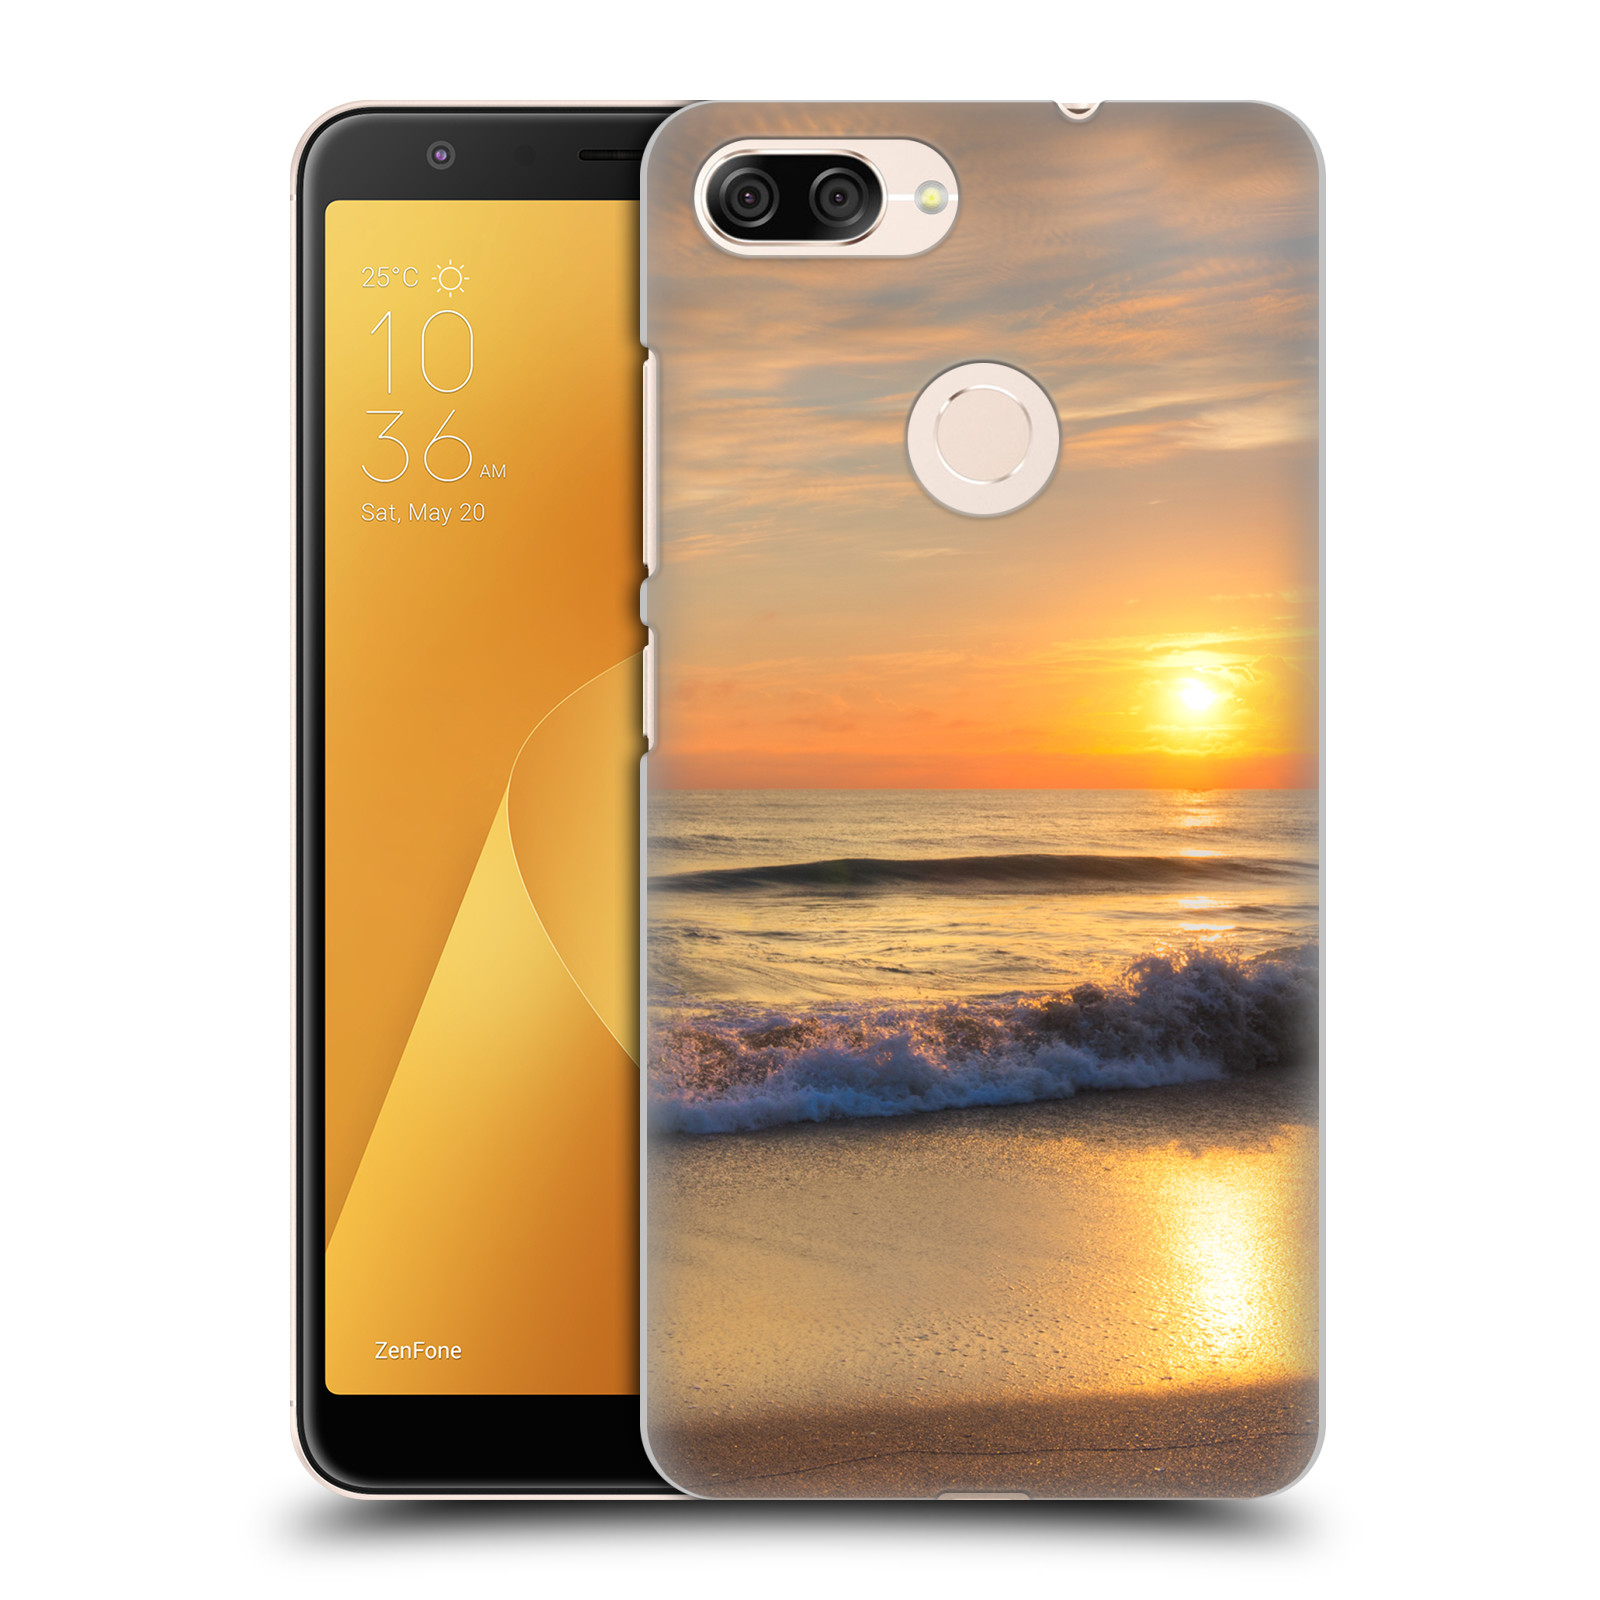 Zadní obal pro mobil Asus Zenfone Max Plus (M1) - HEAD CASE - Krásy přirody - Nádherná pláž